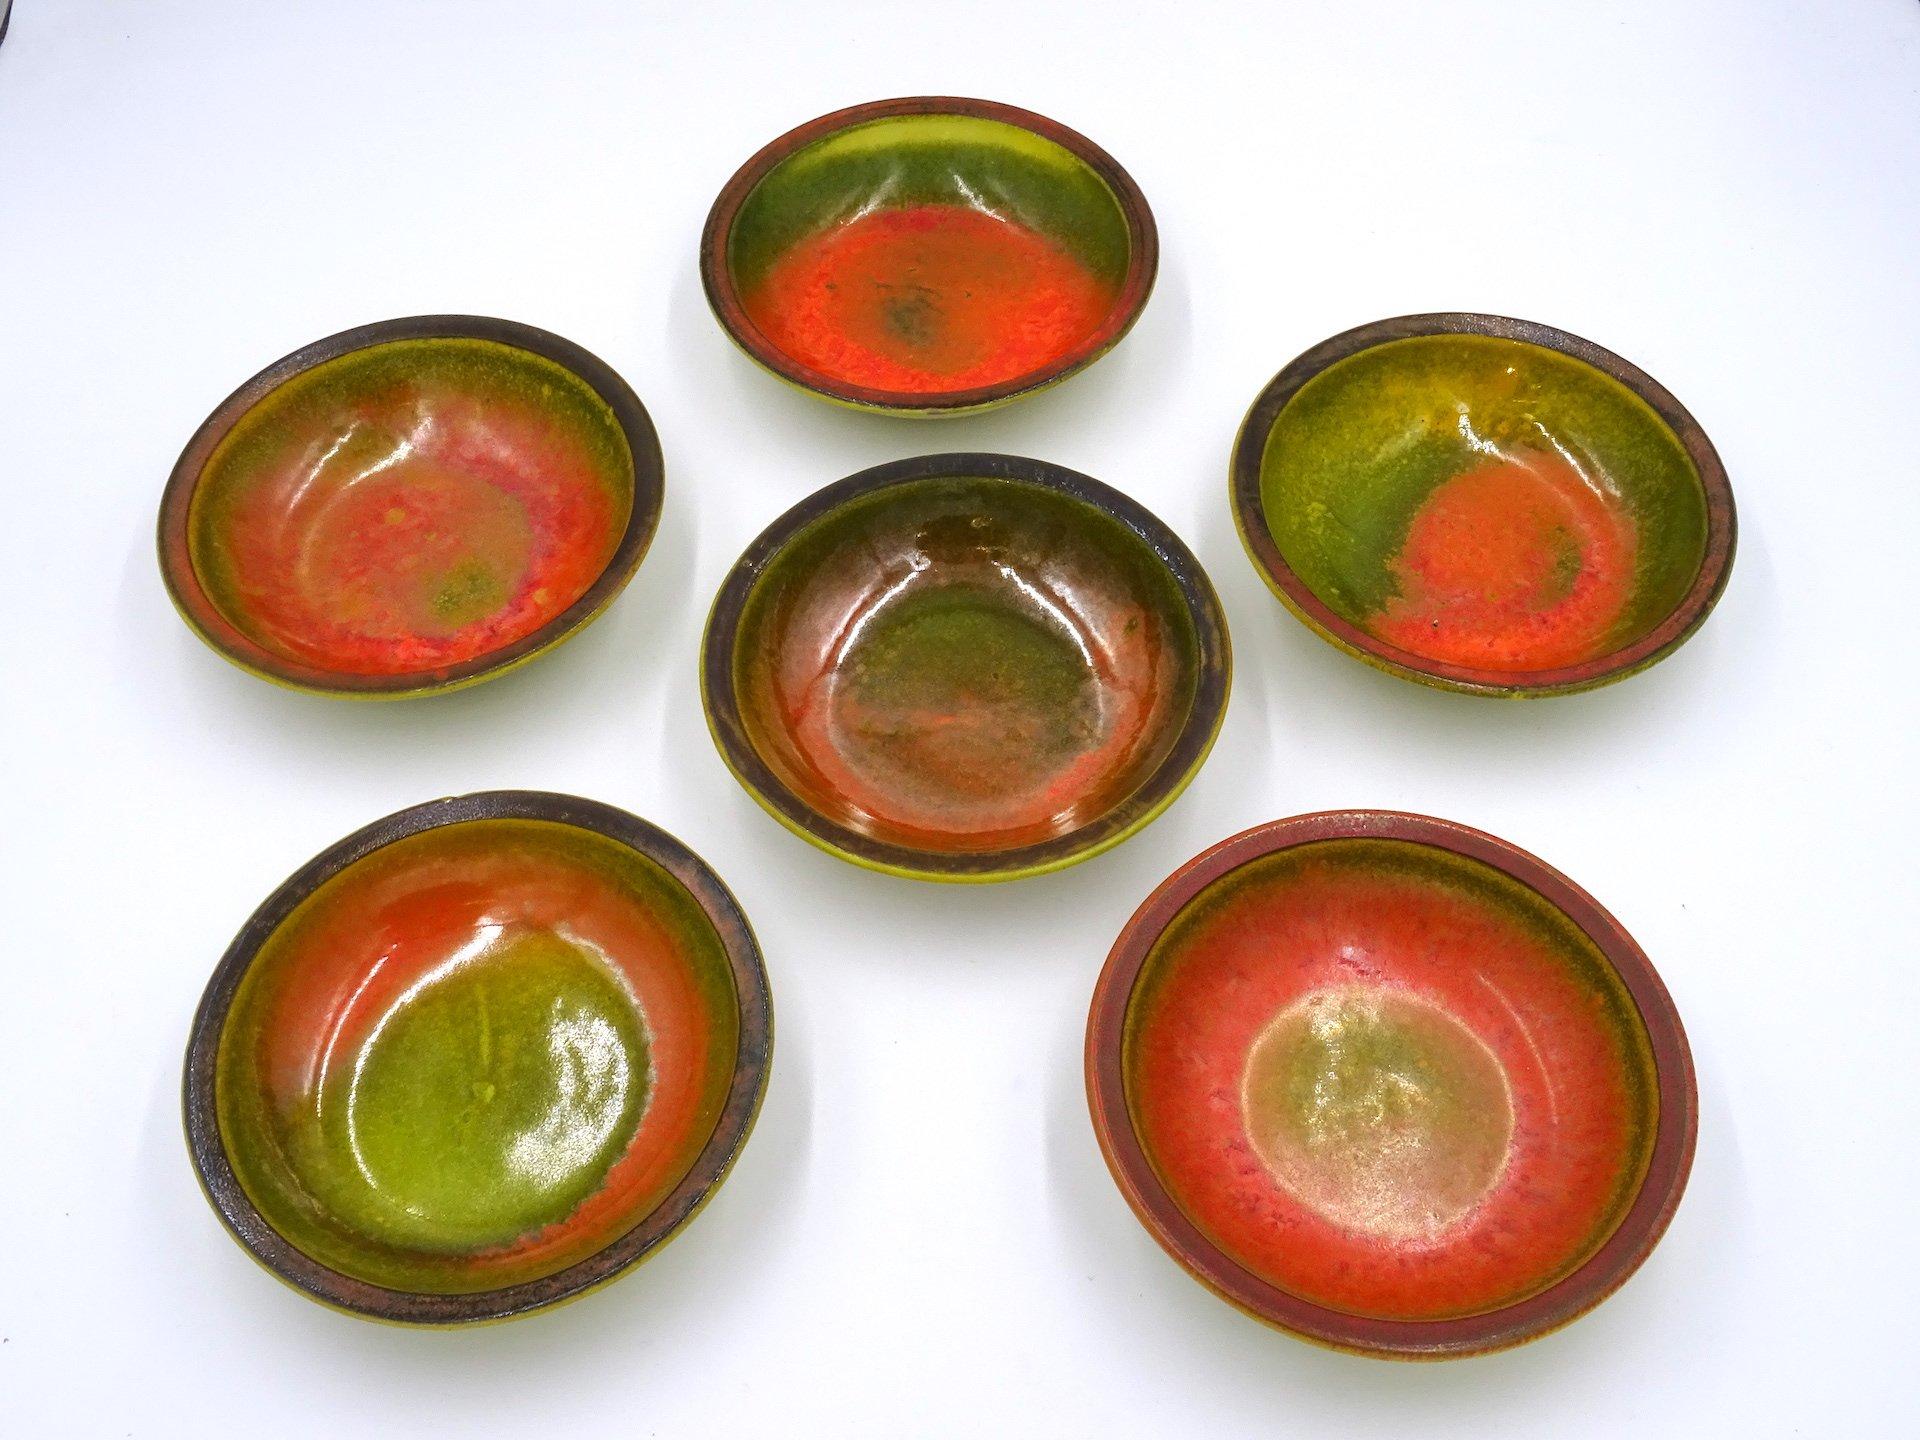 Set bestehend aus sieben Schalen aus polychrom glasierter Keramik aus den siebziger Jahren von dem italienischen Künstler Alessio TASCA:

- sechs kleine Schalen durch warme Farben einschließlich orange, rot, grün, braun, magenta gekennzeichnet,